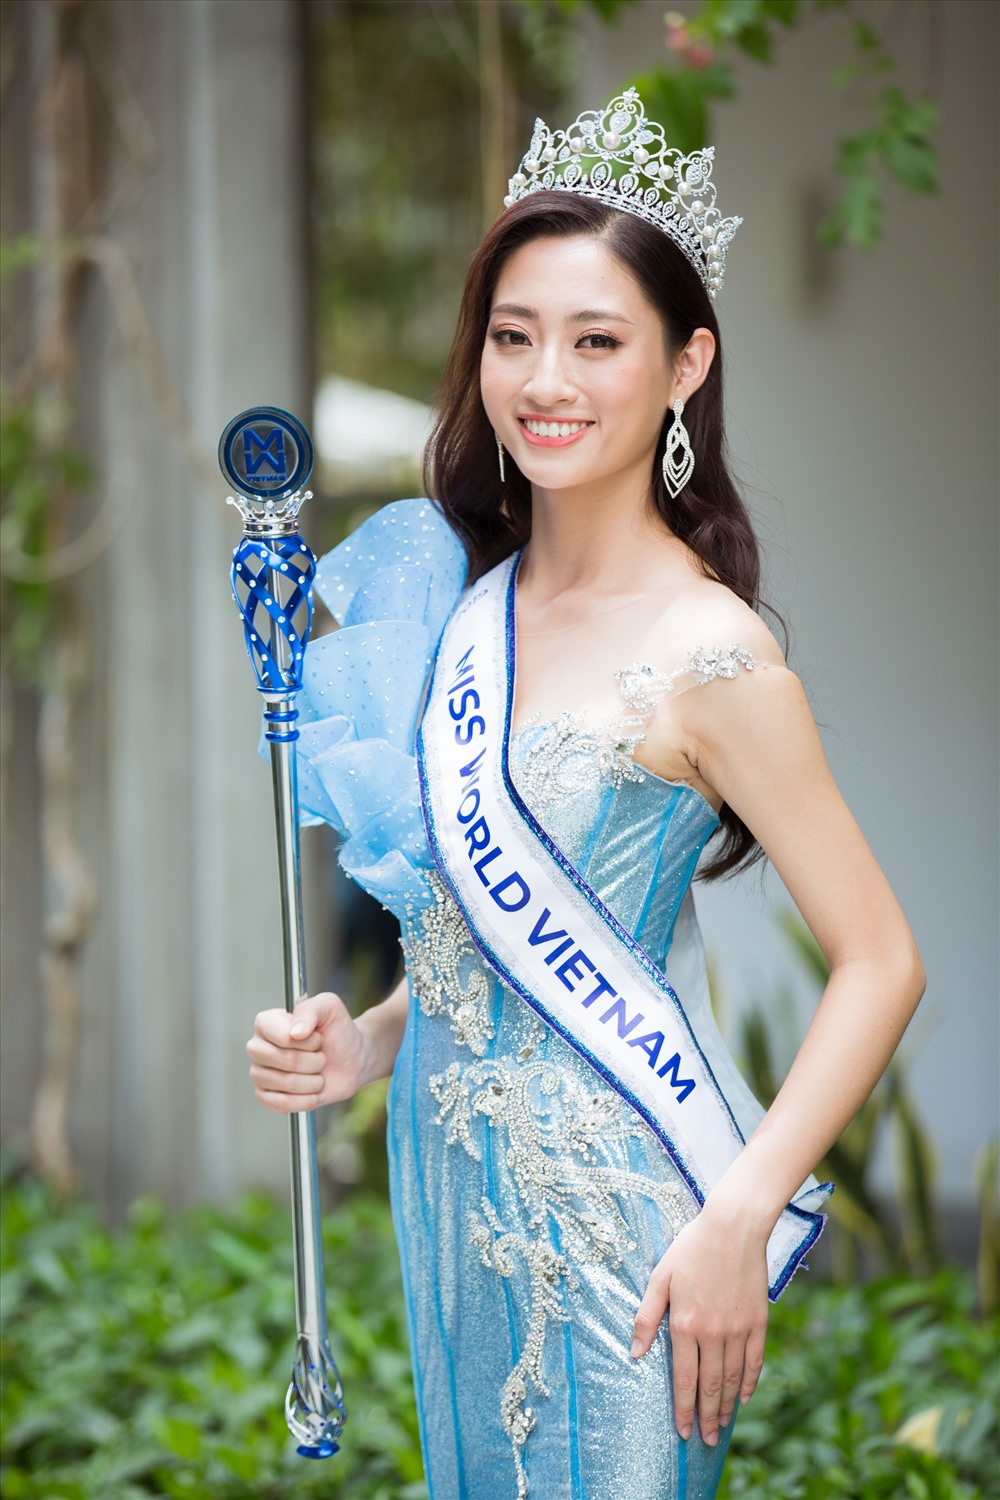 Hoa hậu Lương Thuỳ Linh cho biết bản thân muốn tập trung học hành nên chưa nghĩ đến chuyện tình cảm. Ảnh: MWVN.